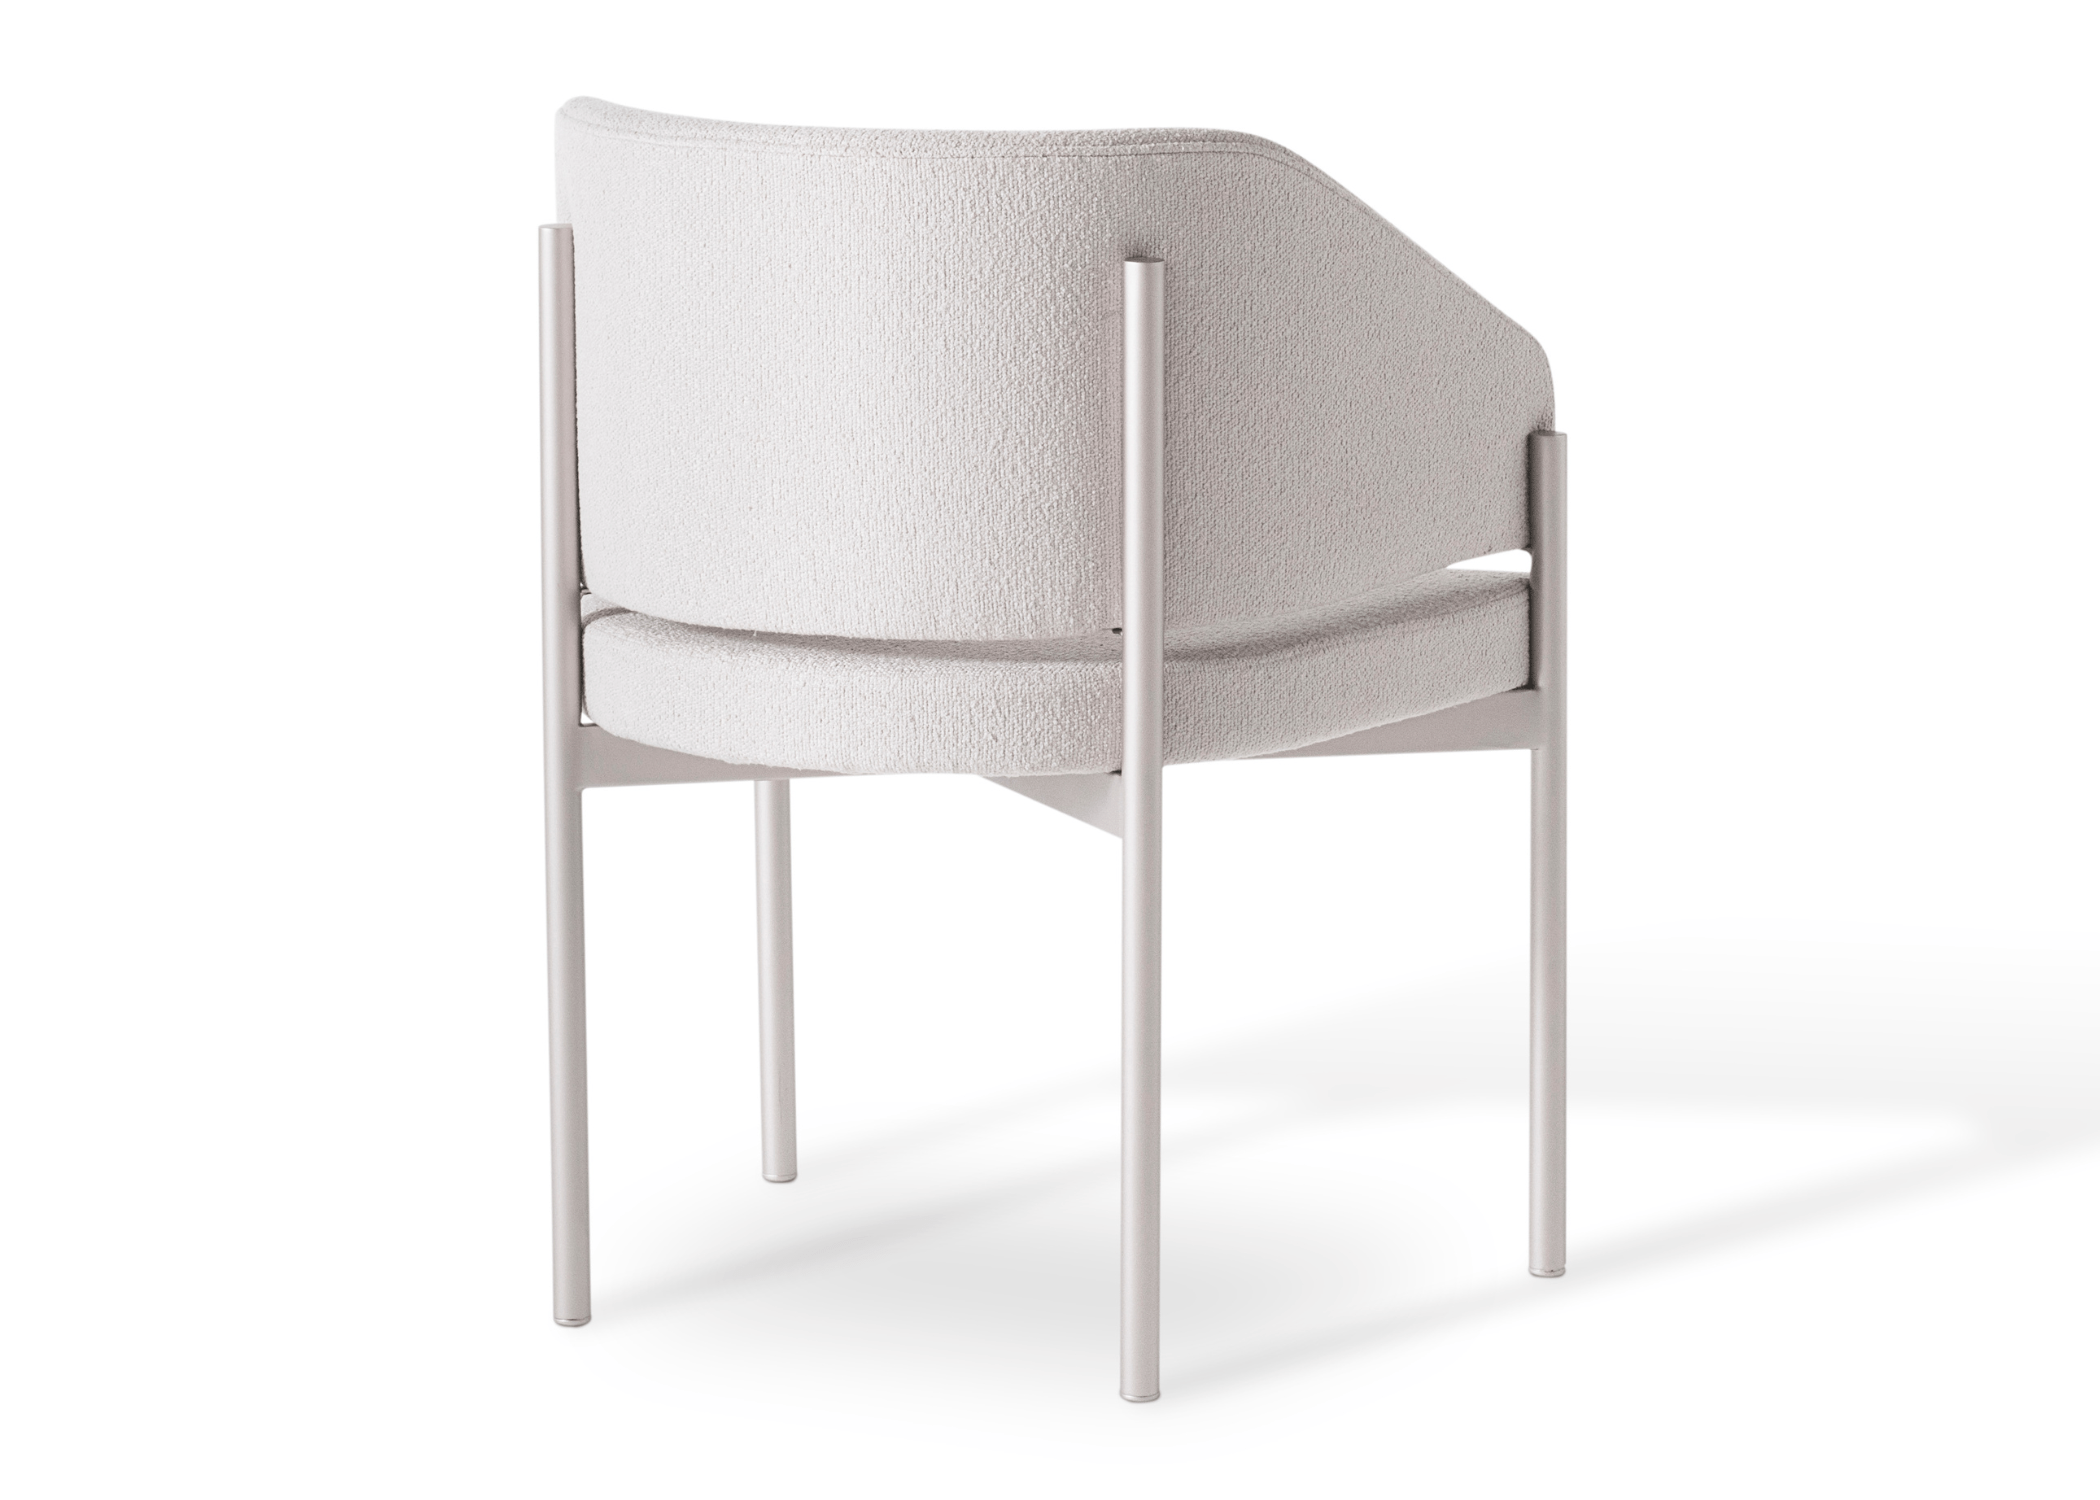 Detalhe do encosto ergonômico da cadeira Leka, proporcionando conforto excepcional.